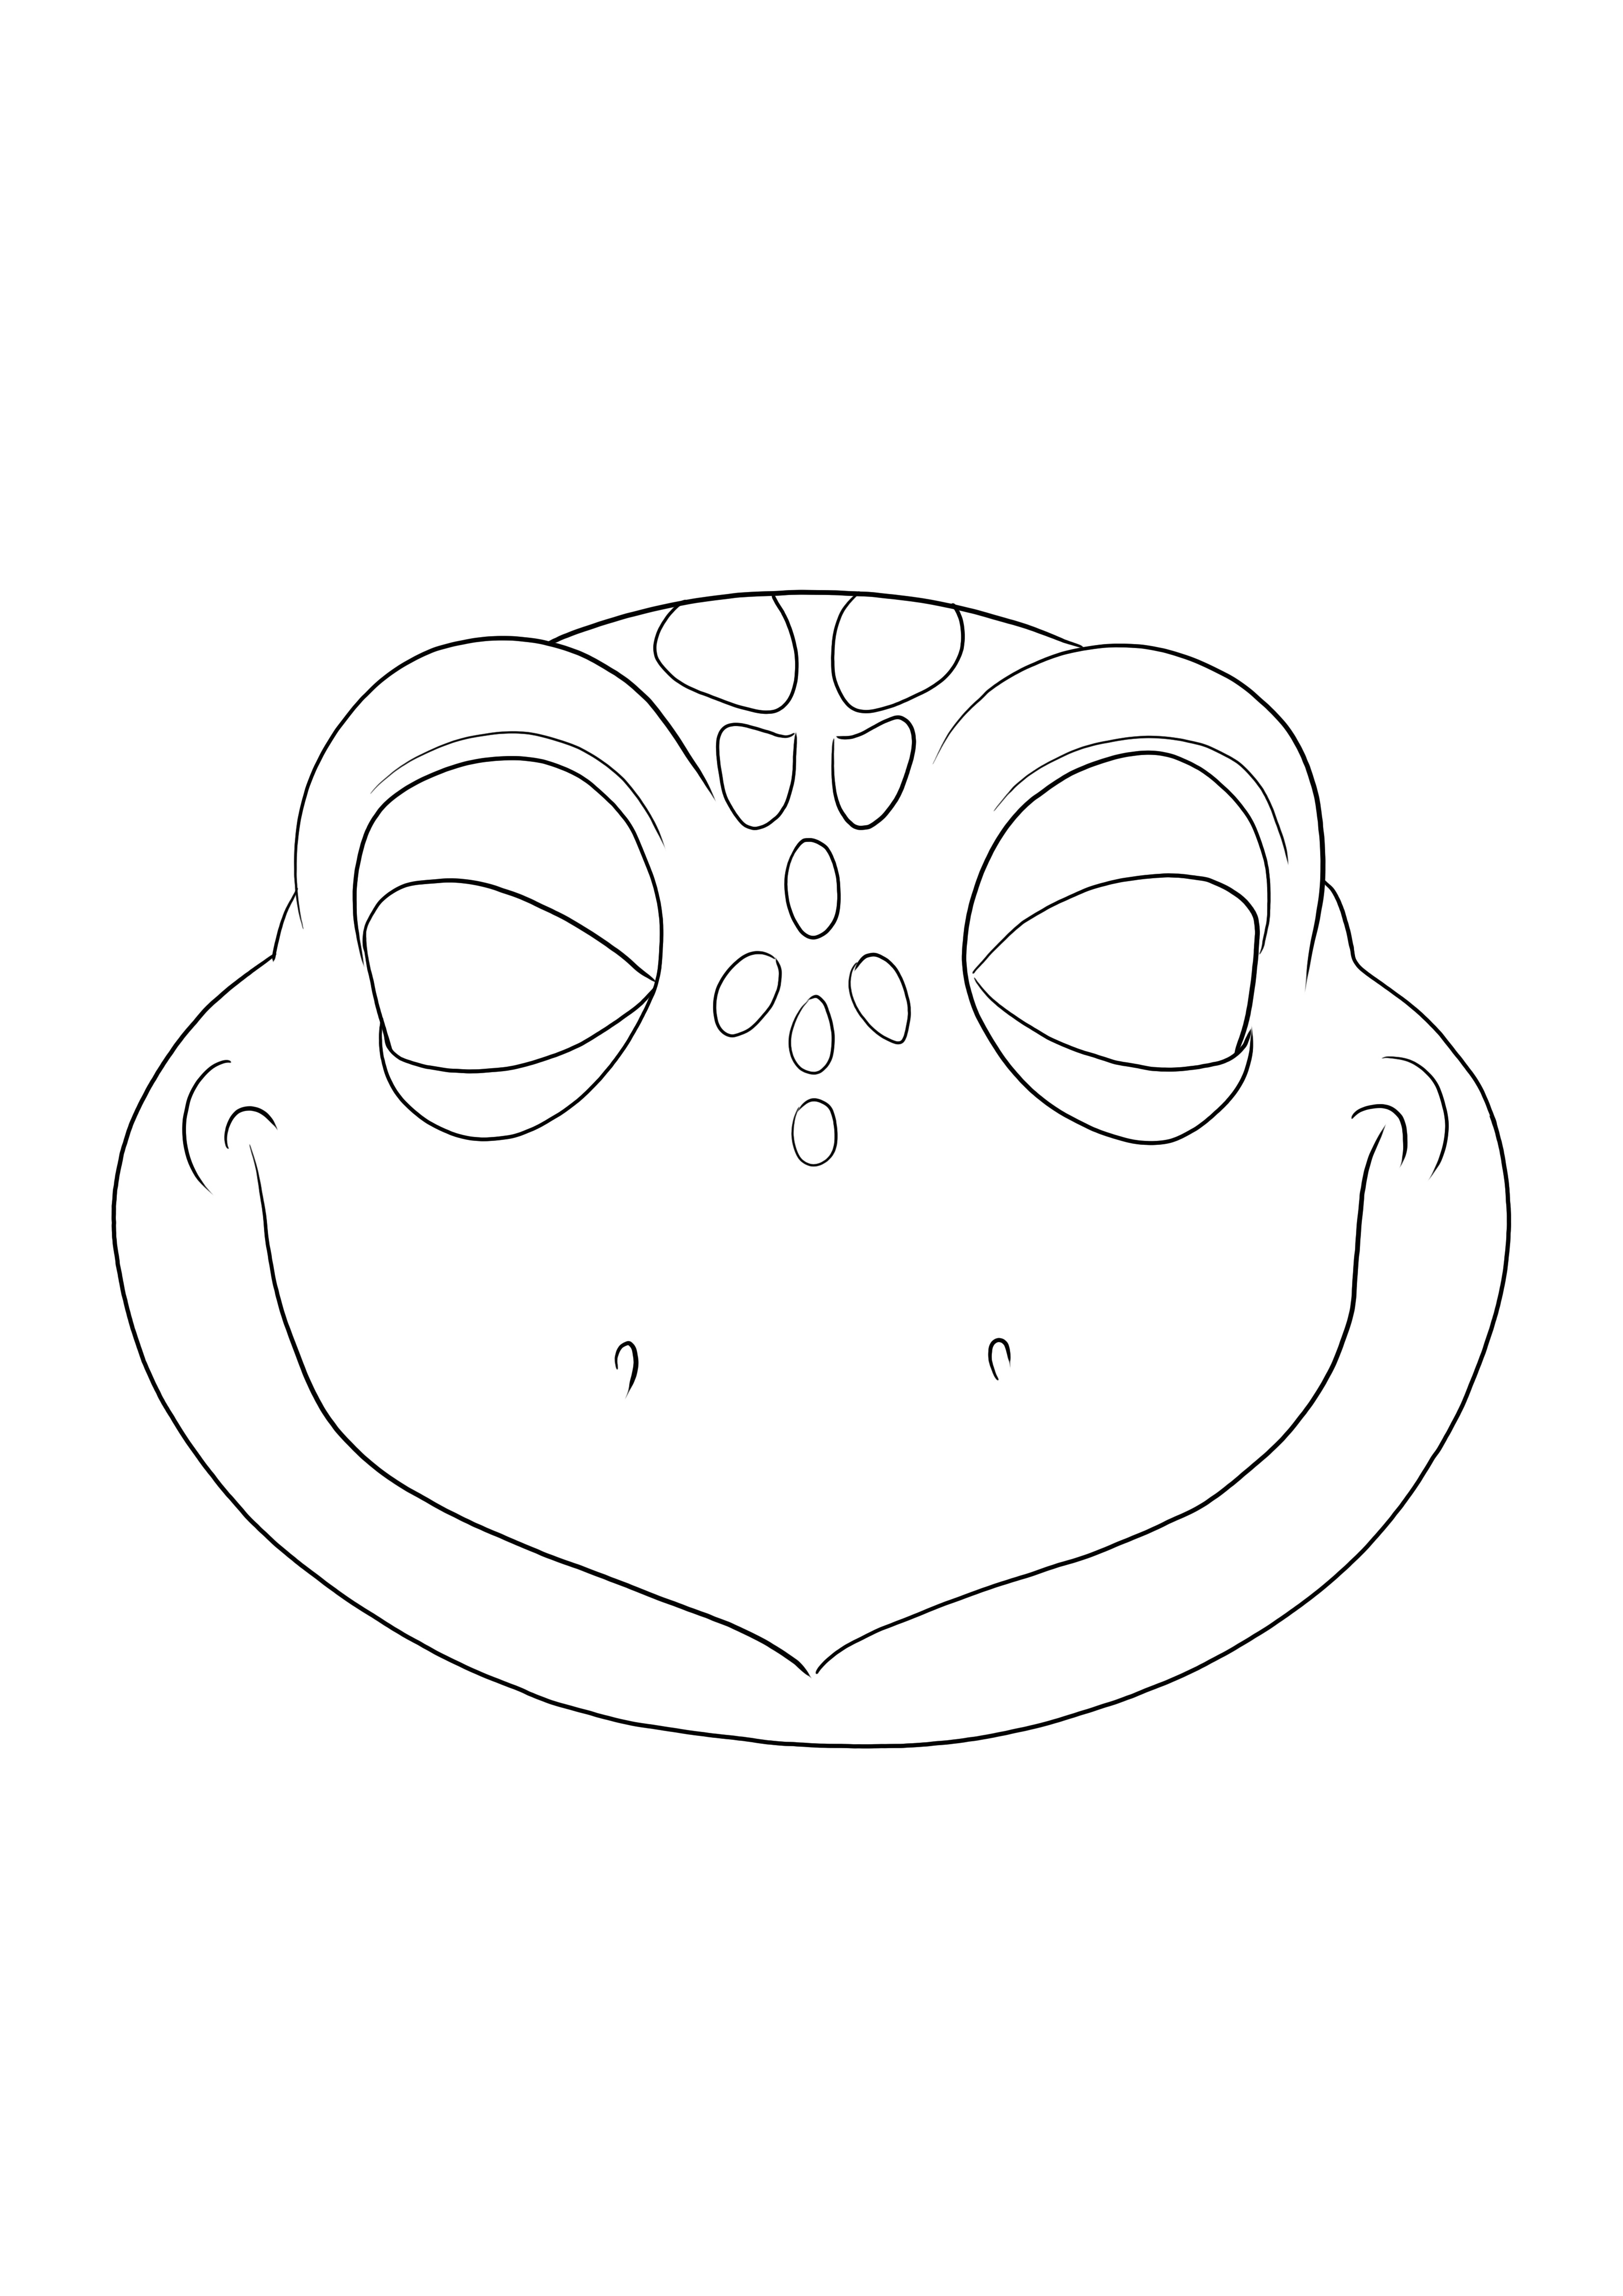 Einfach Malvorlage einer Schildkrötenmaske zum kostenlosen Ausdrucken oder Download